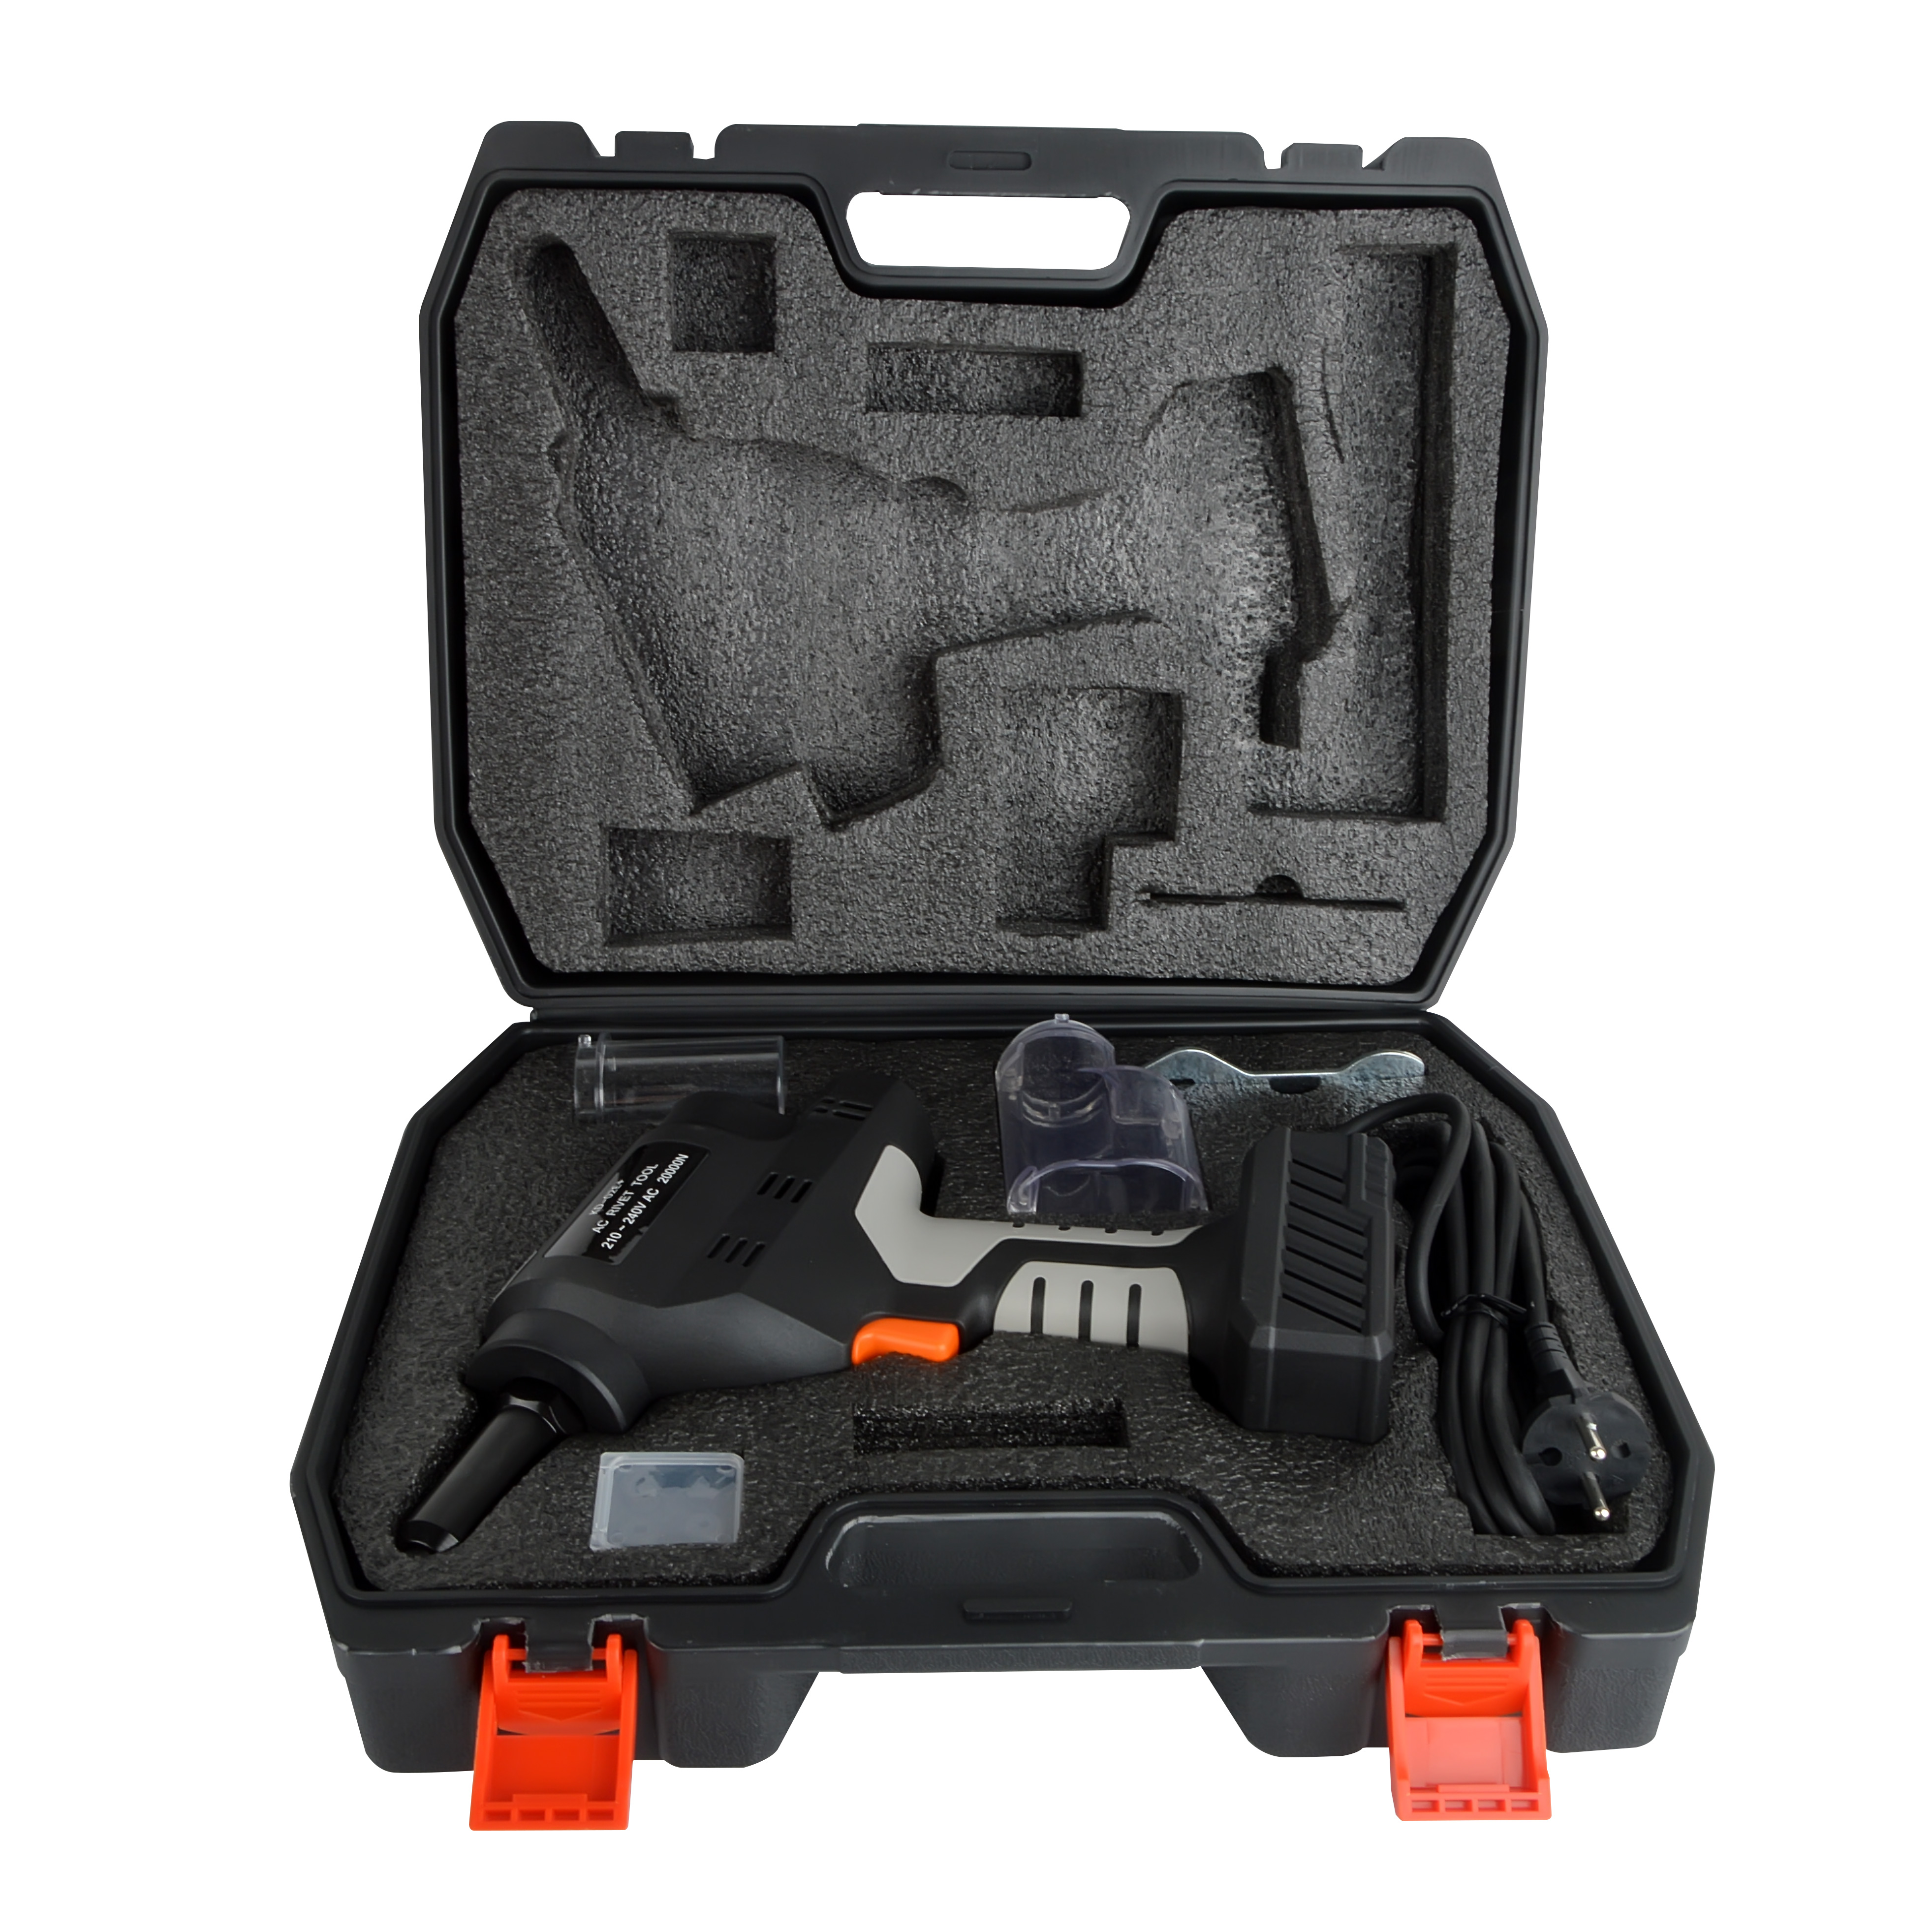 KD-02E+ 230 V Professional Electric Brushless Rivet Gun Rivet Tool Set 